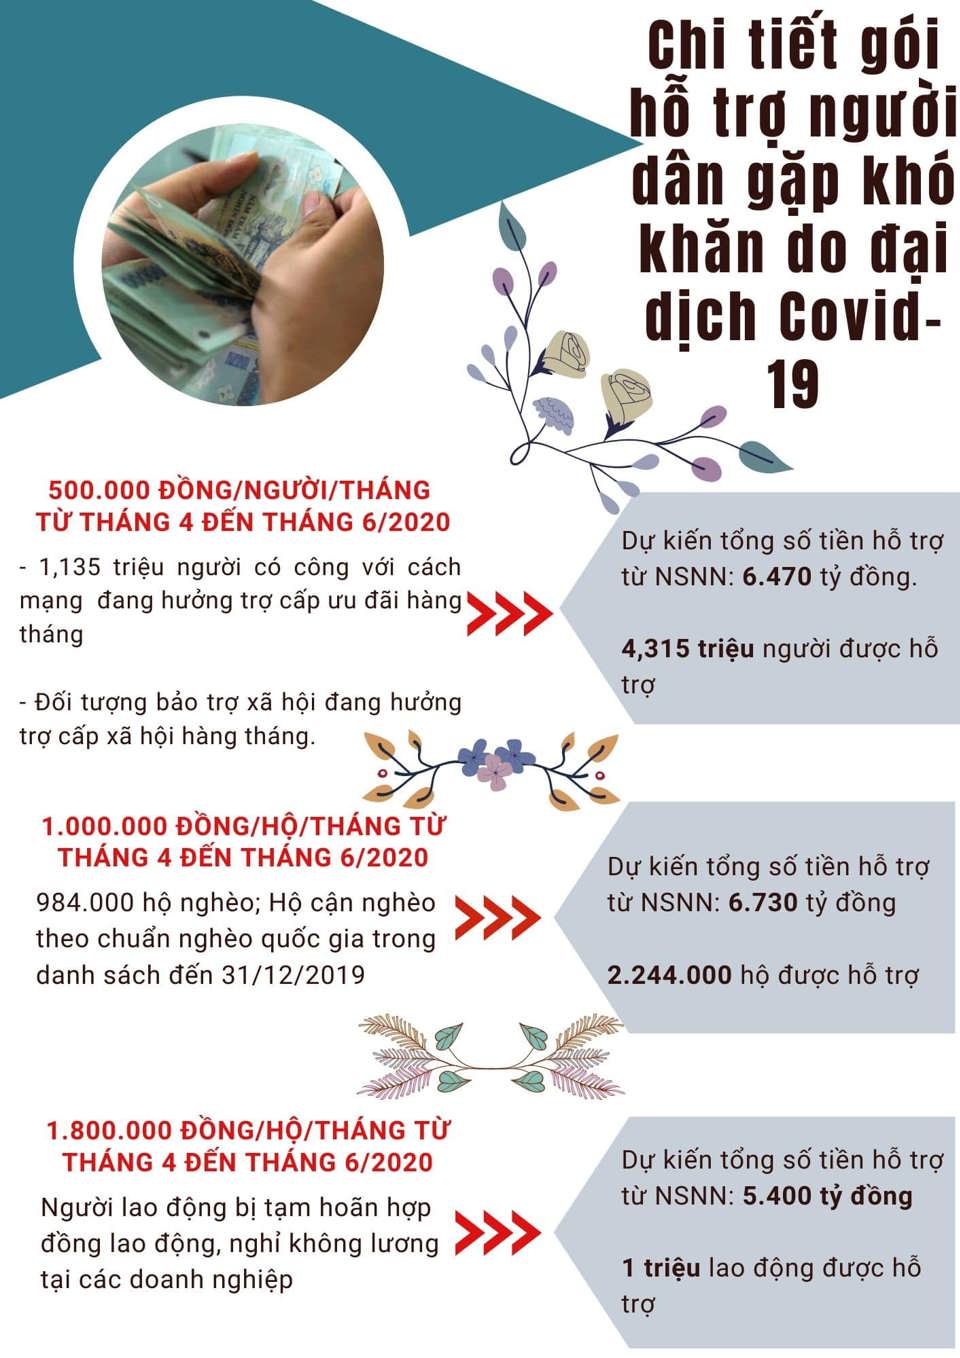 [Infographic] Chi tiết gói hỗ trợ người dân gặp khó khăn do đại dịch Covid-19 - Ảnh 1